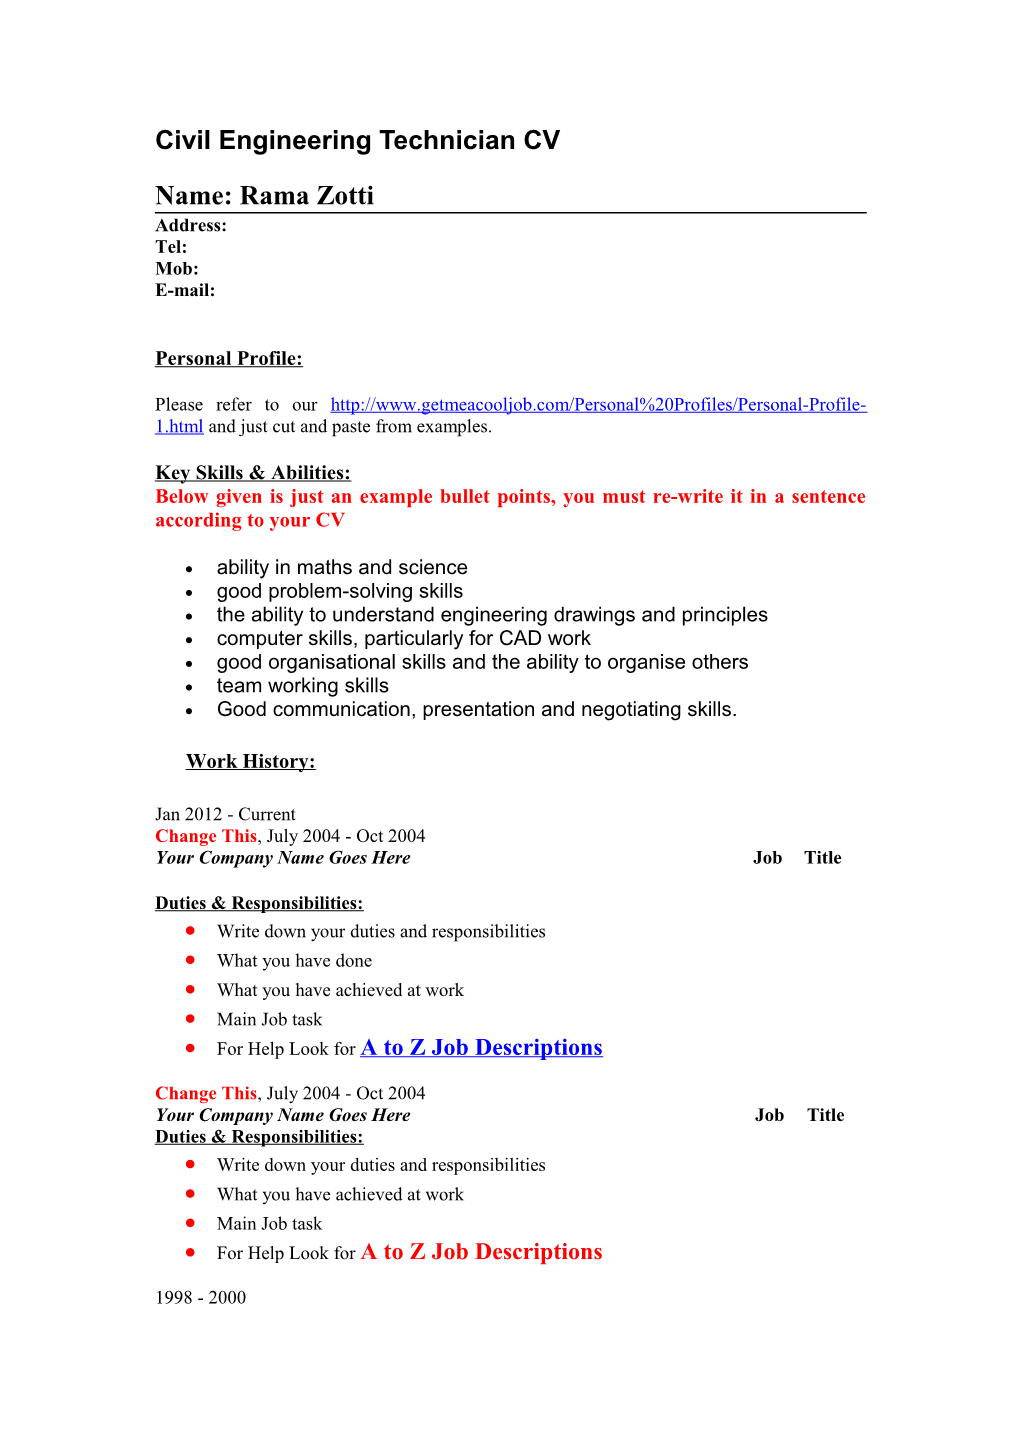 Civil Engineering Technician Job Descriptions